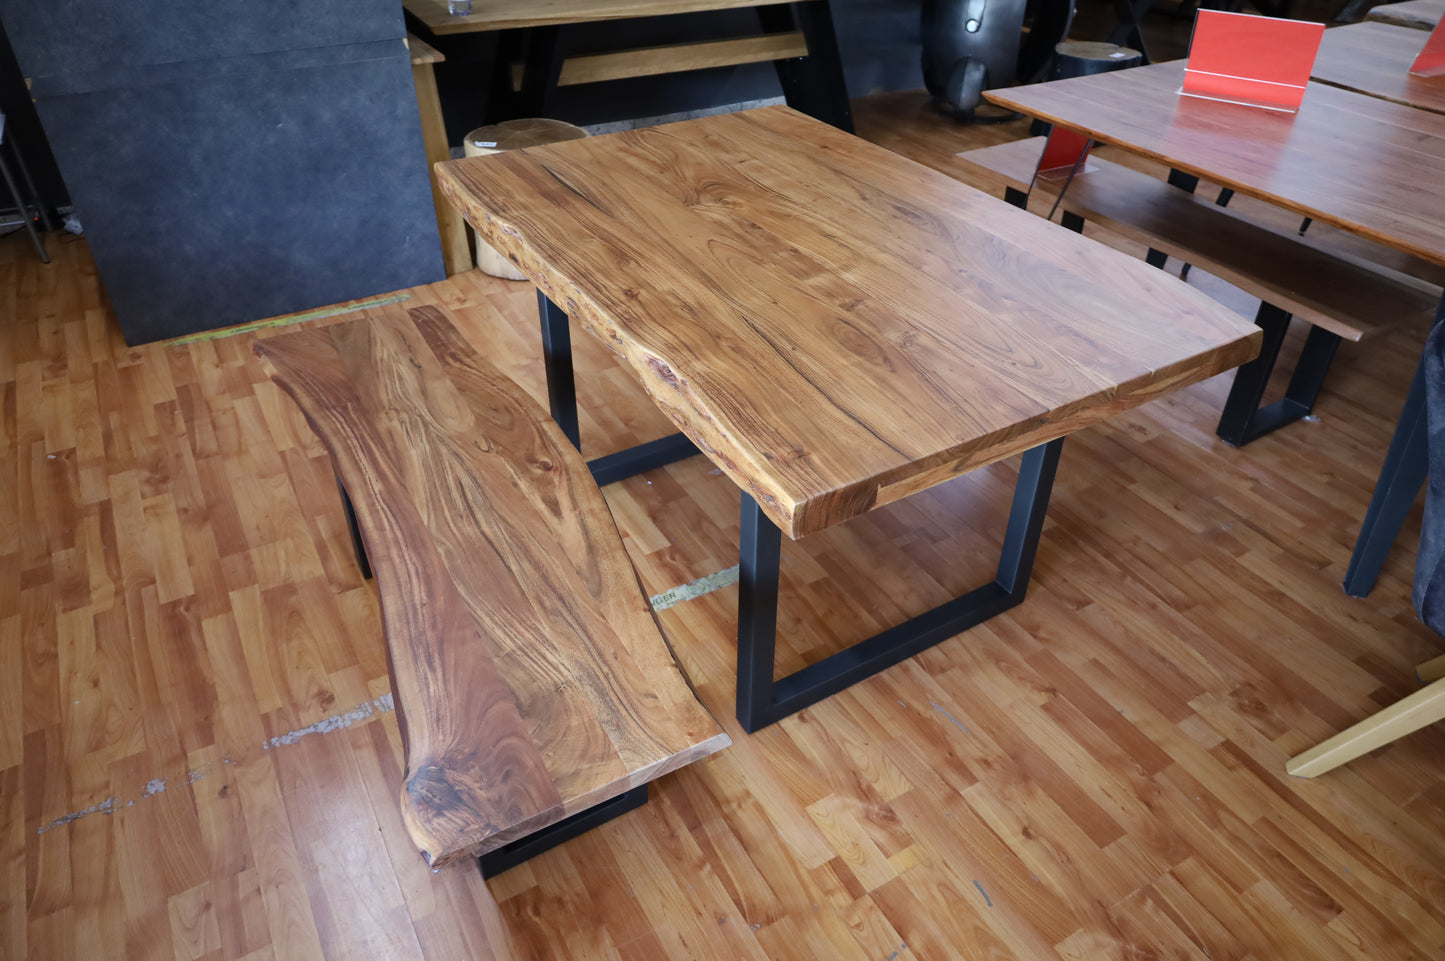 Esstisch Tisch + Massivholz Akazie +Echte Baumkante 200x100cm